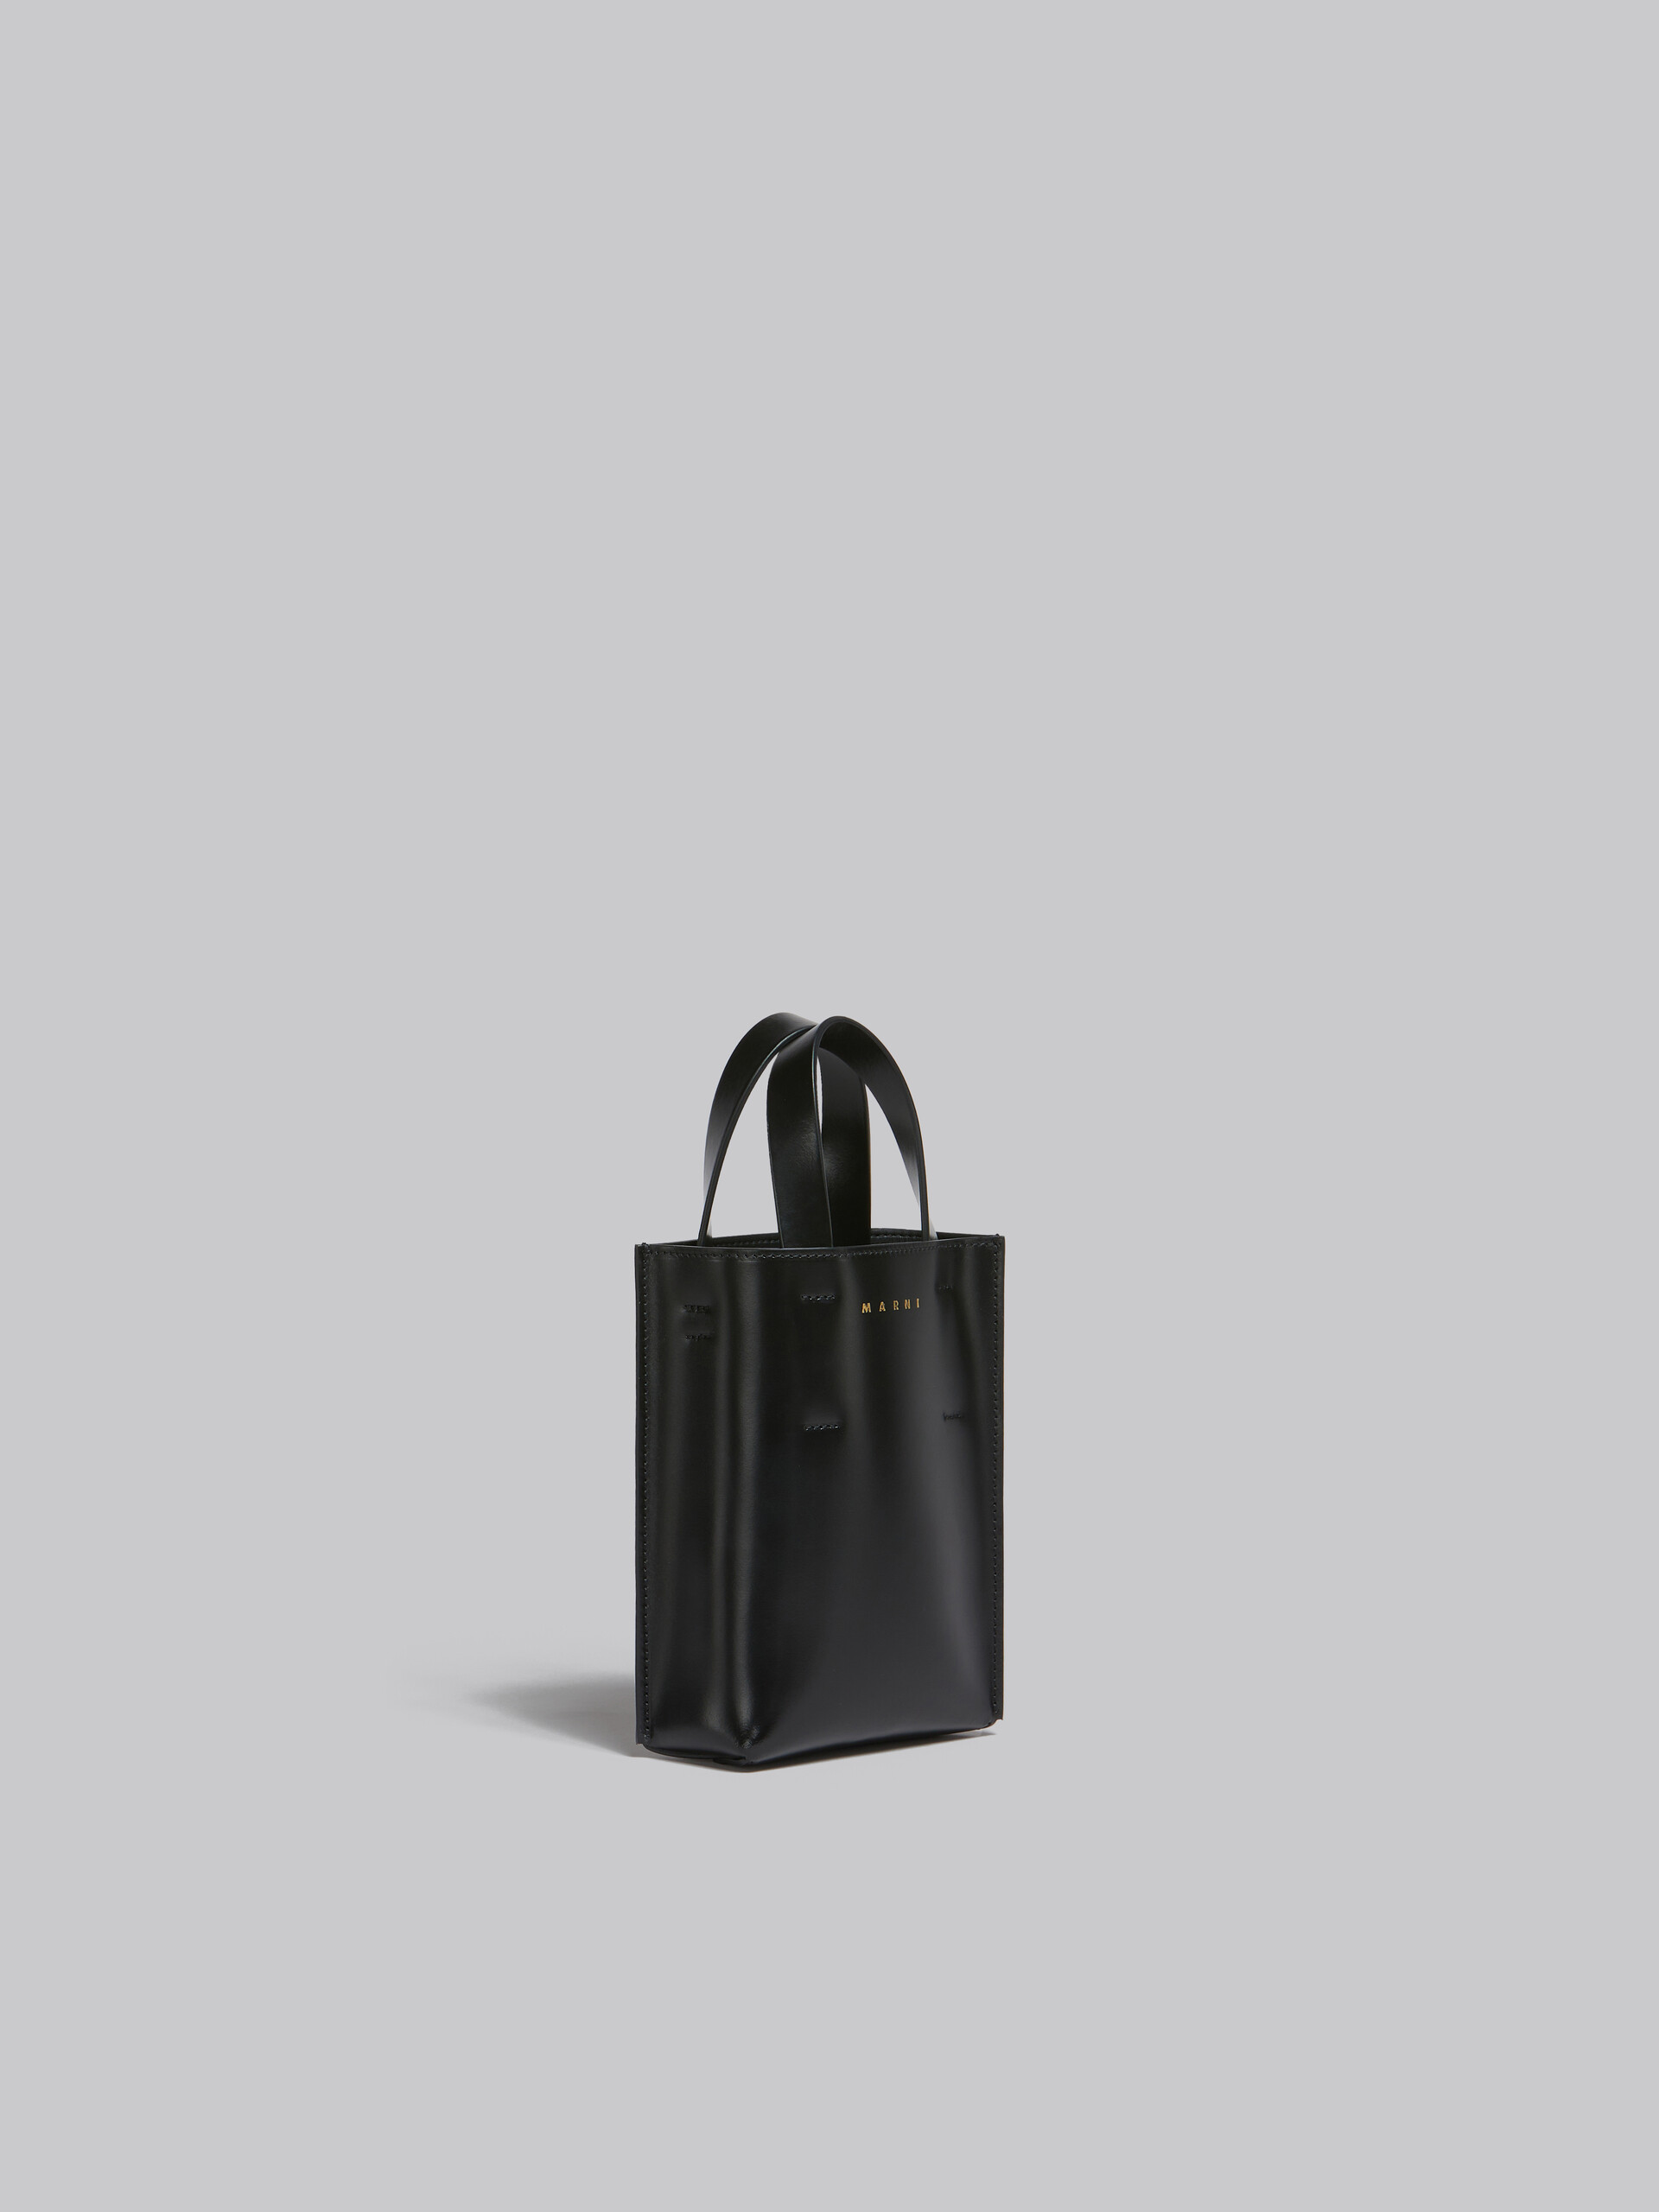 Celine Luggage Nano Shopper Women's Leather Handbag,Shoulder Bag